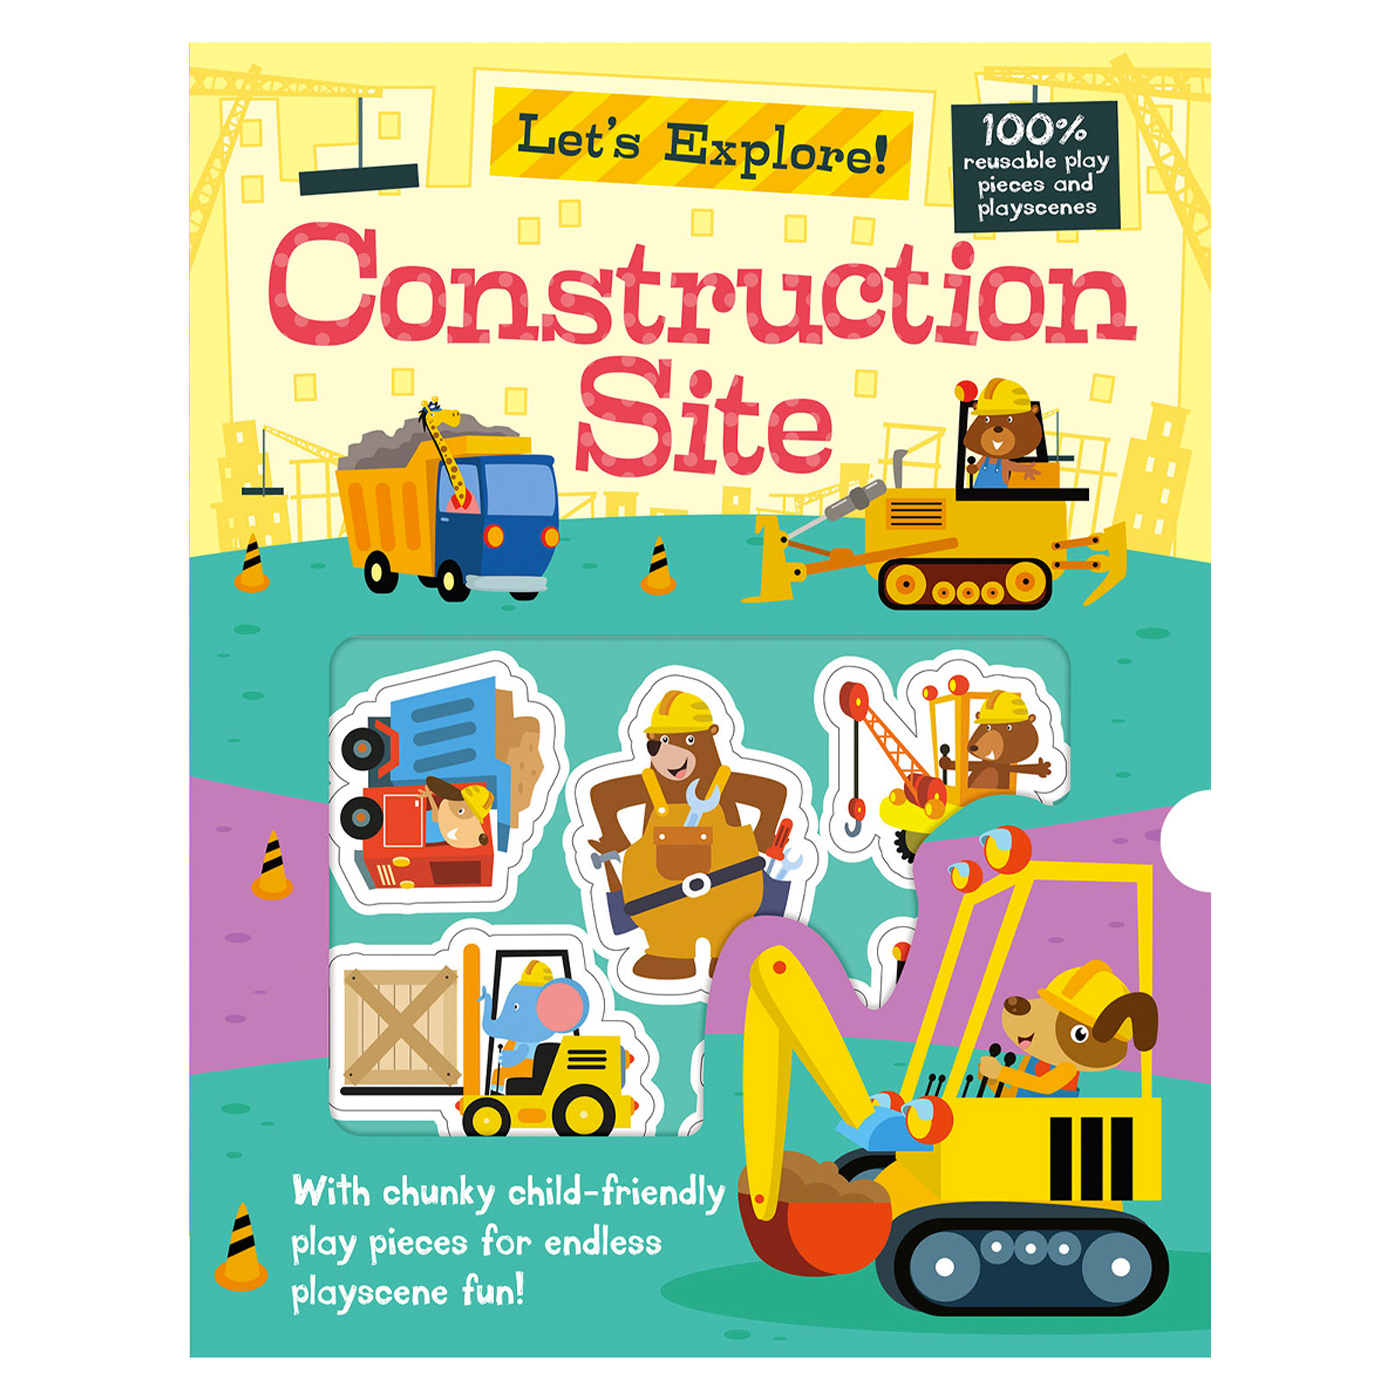  Let's Explore! Construction Site